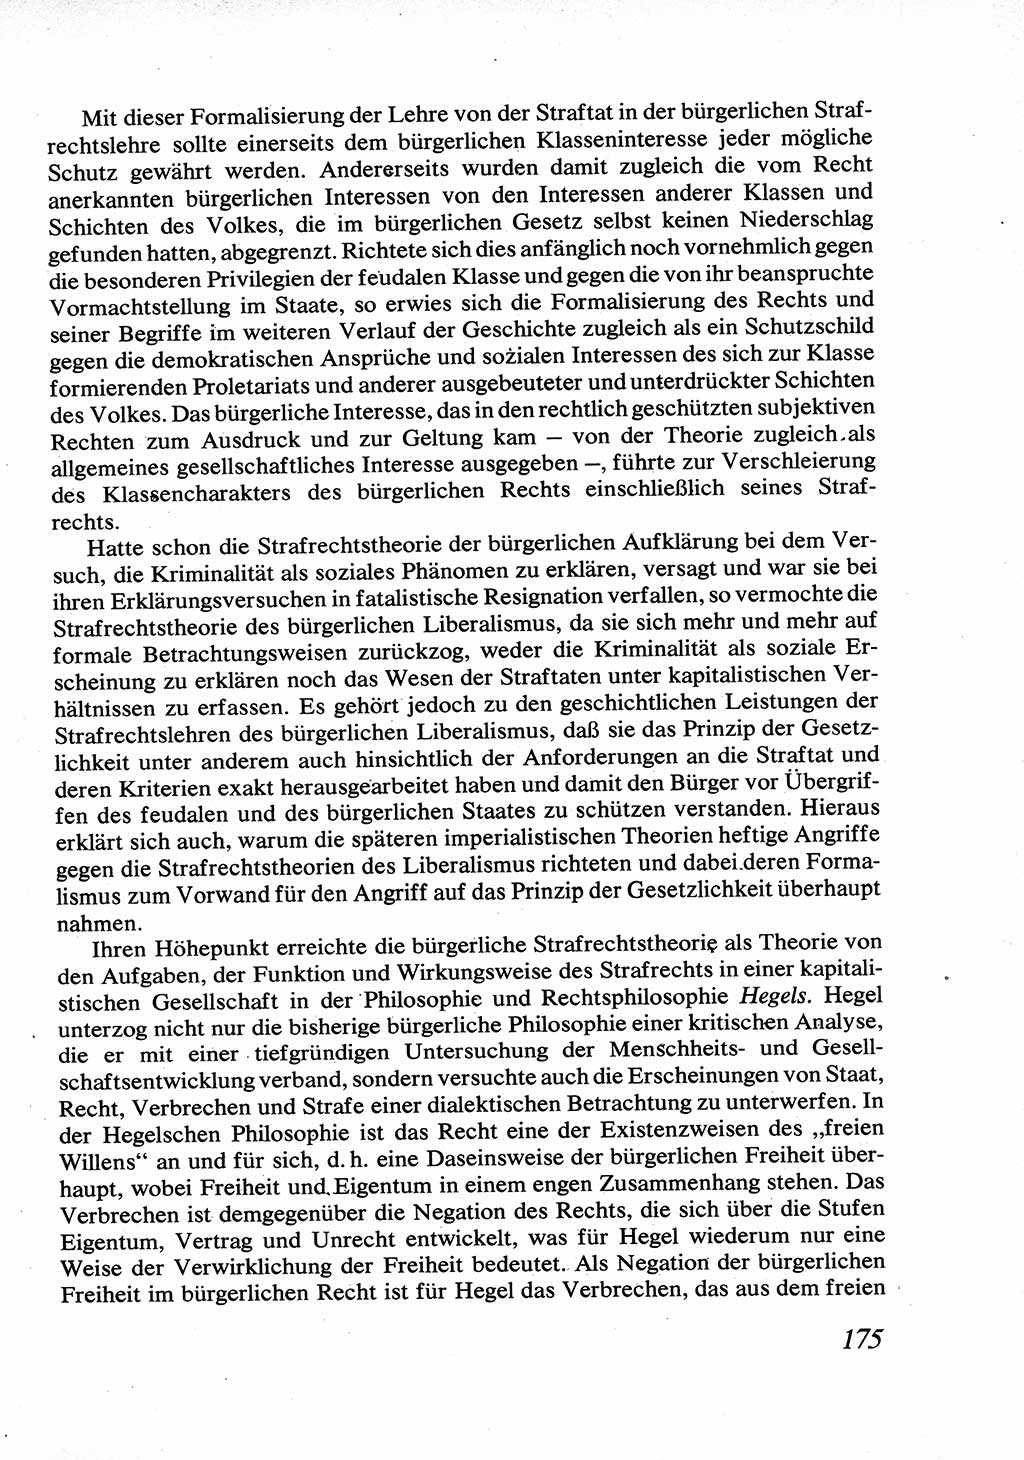 Strafrecht [Deutsche Demokratische Republik (DDR)], Allgemeiner Teil, Lehrbuch 1976, Seite 175 (Strafr. DDR AT Lb. 1976, S. 175)